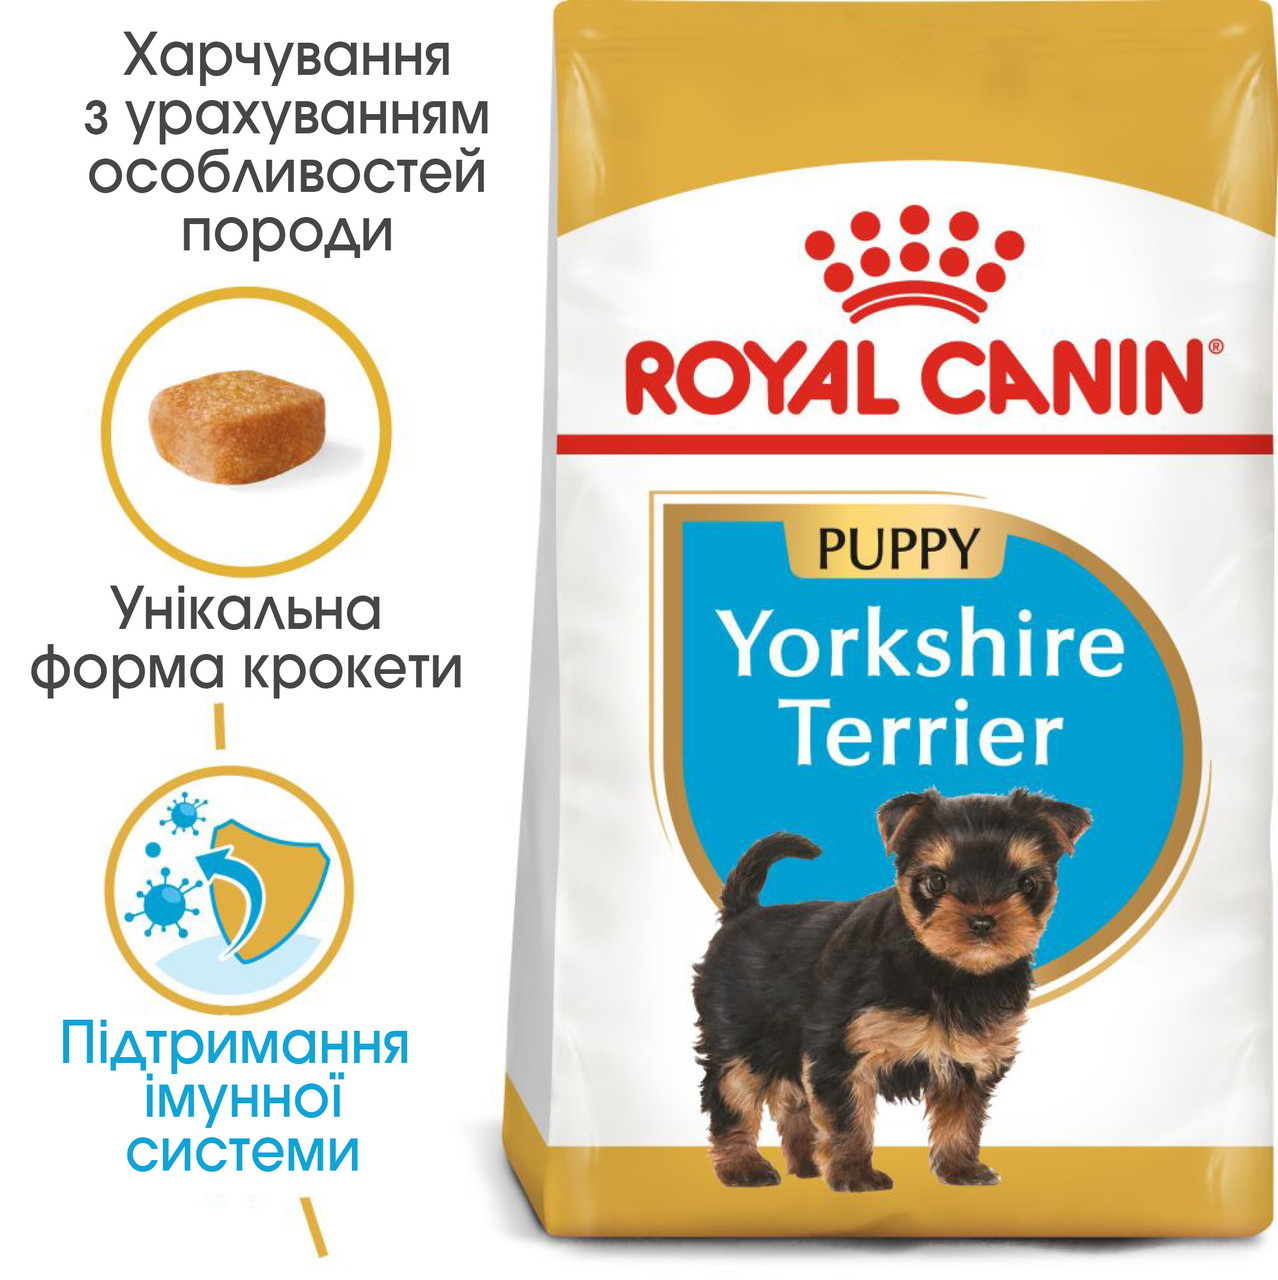 Royal Canin Yorshire Terrier 29 Puppy сухий корм для цуценят породи Йоркширський тер'єр до 10 міс., 7.5КГ, фото 1